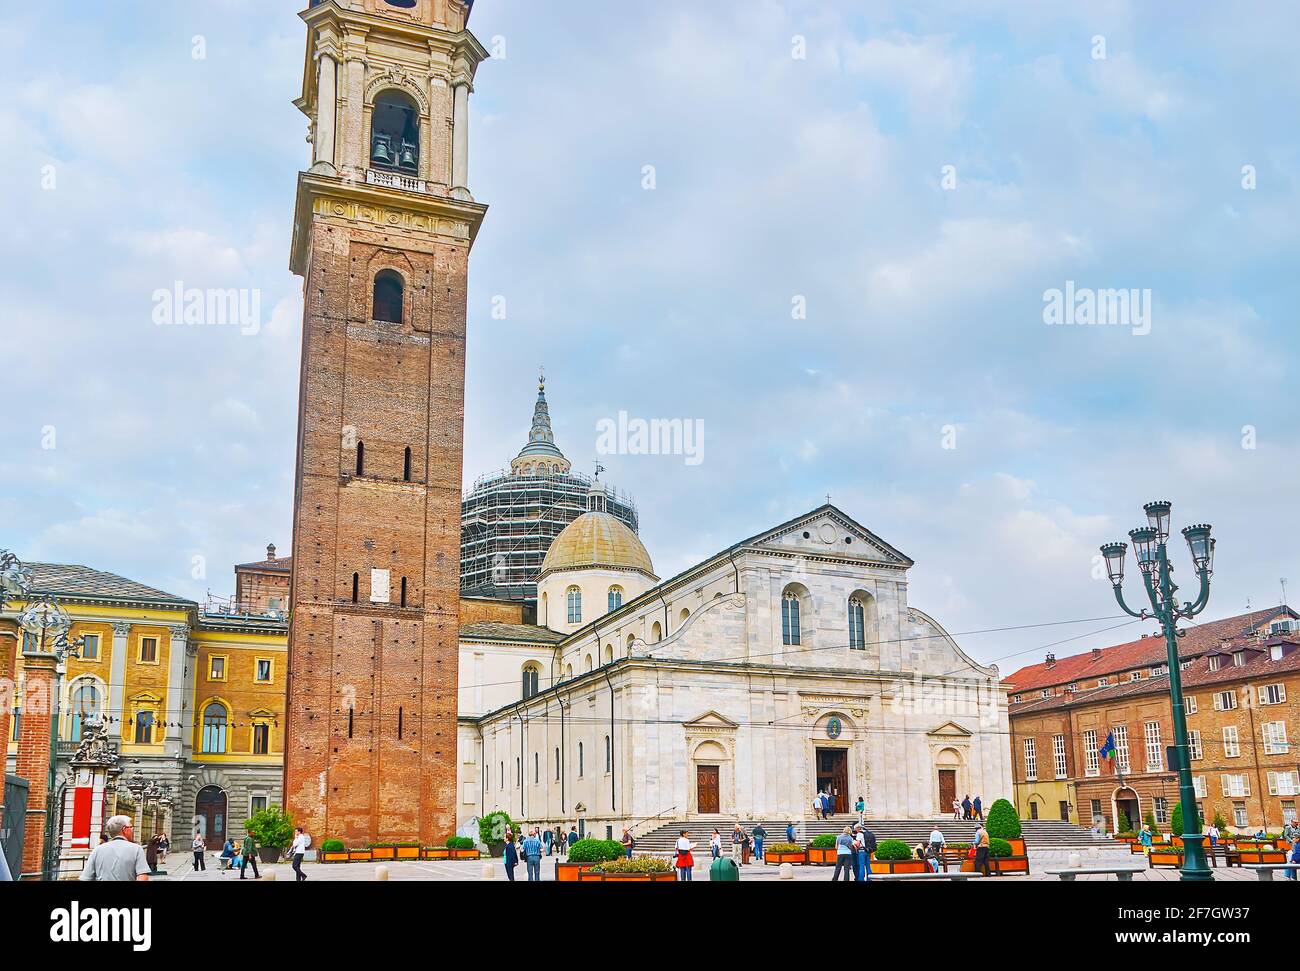 TORINO, ITALIA - 9 maggio 2012: La facciata del Duomo di San Giovanni Battista (Duomo di Torino) con alto campanile in mattoni (Campanile), situato a Piazz Foto Stock